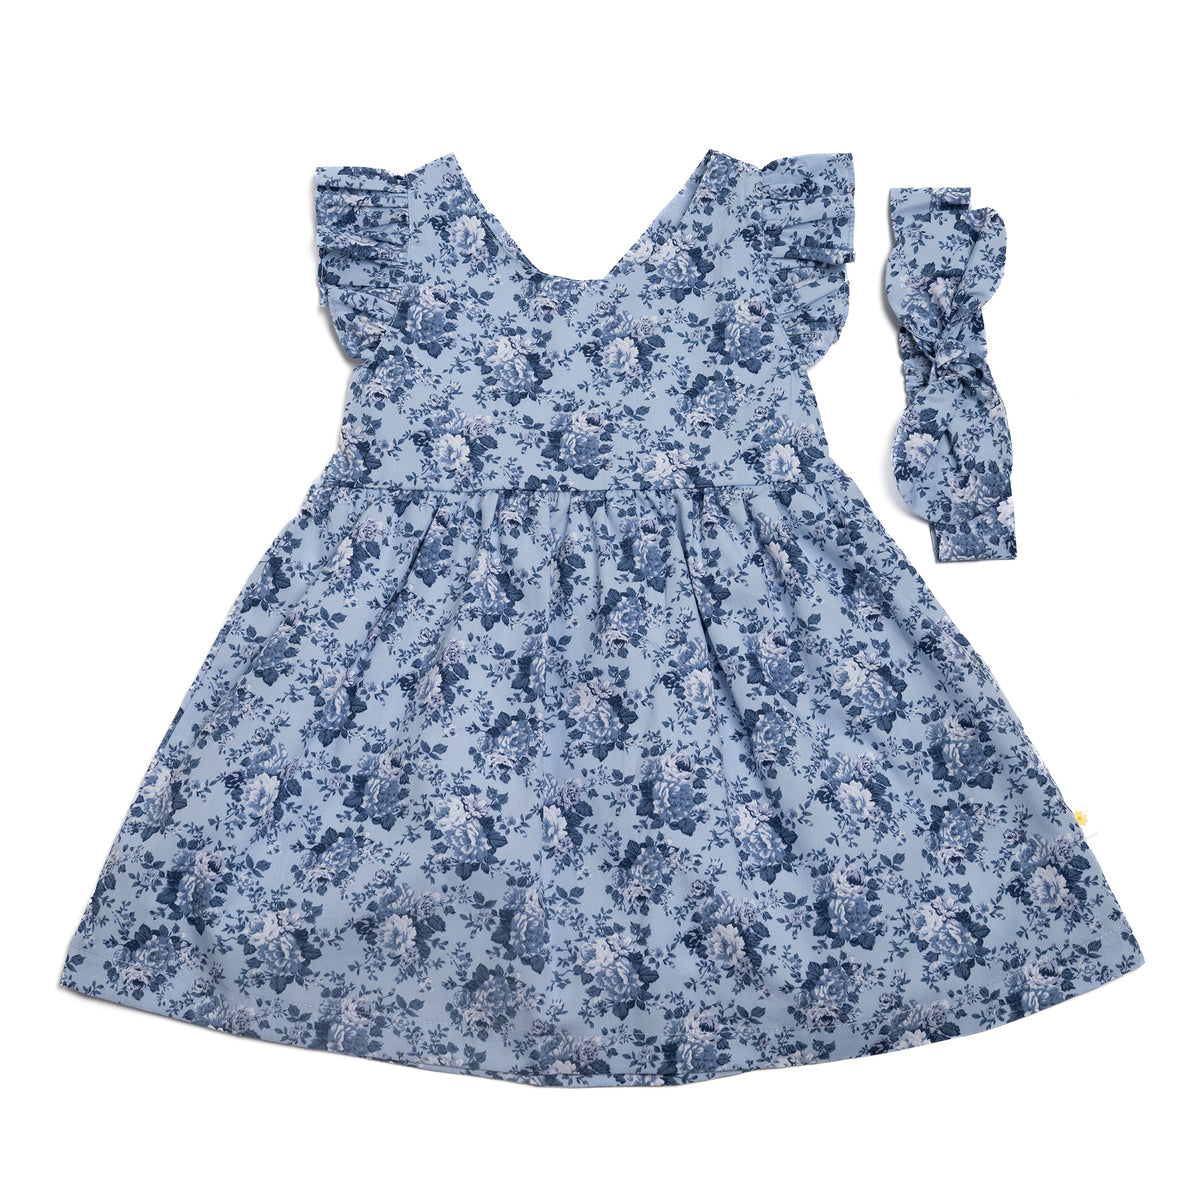 Cross-back dress - Blue flowers